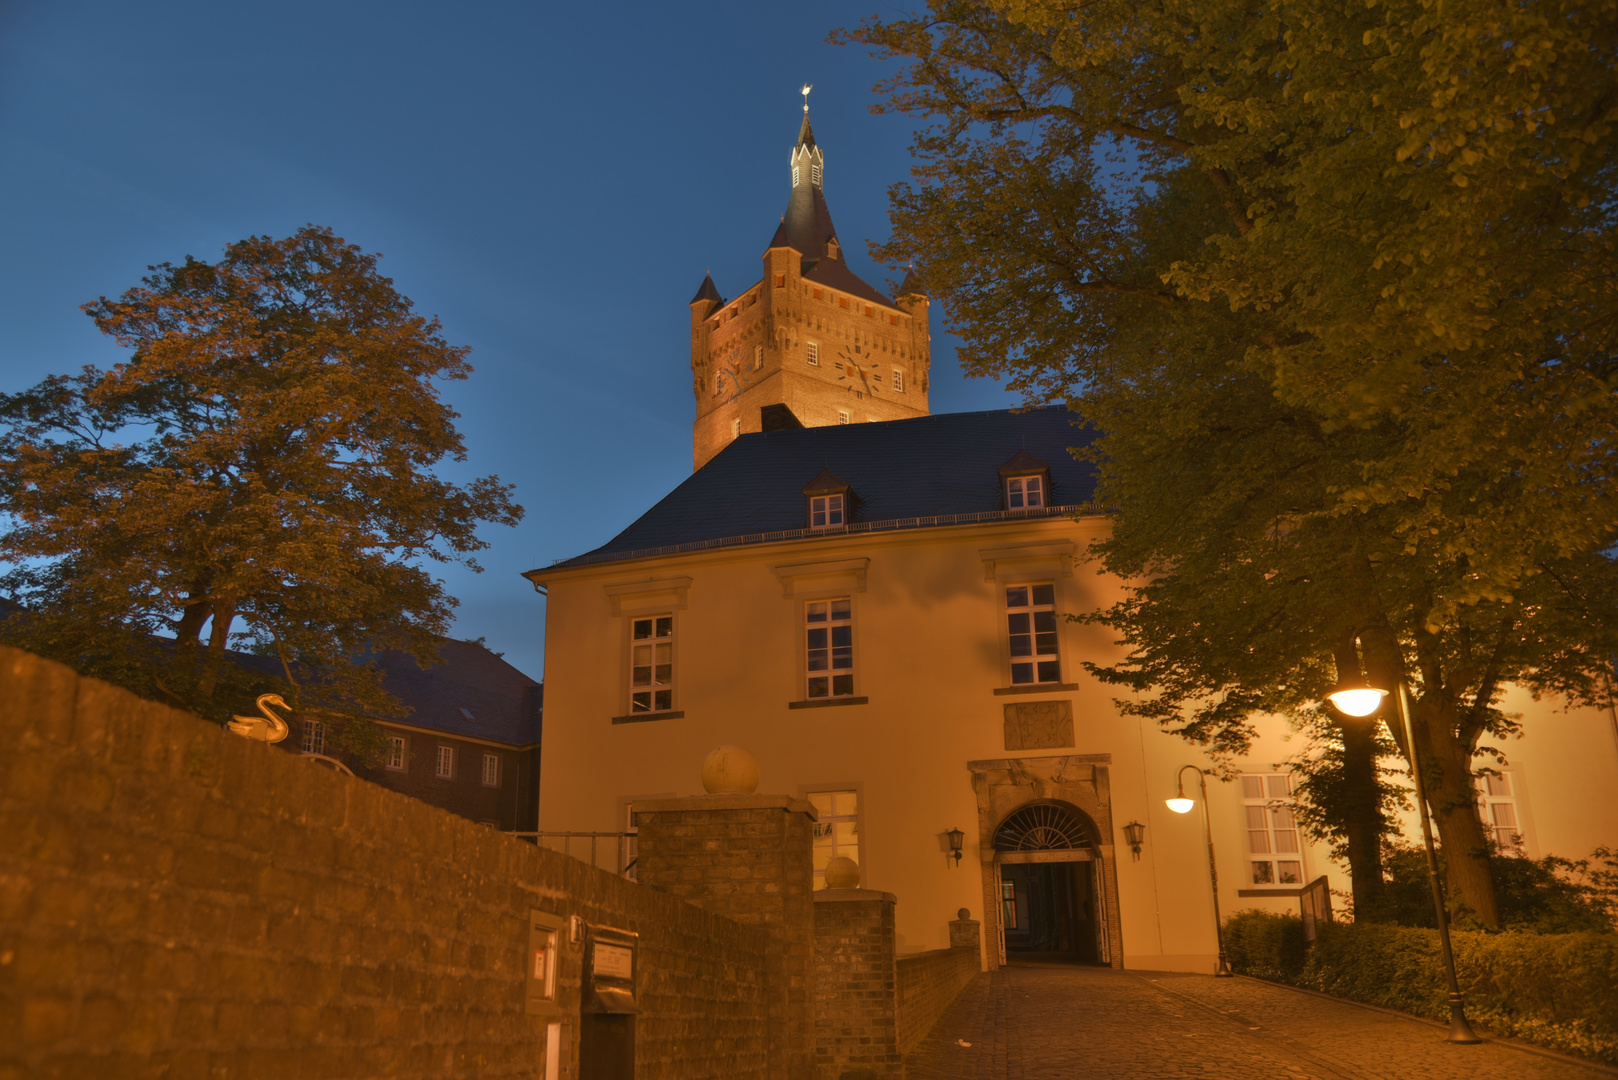 Schwanenburg in Schwanenstadt